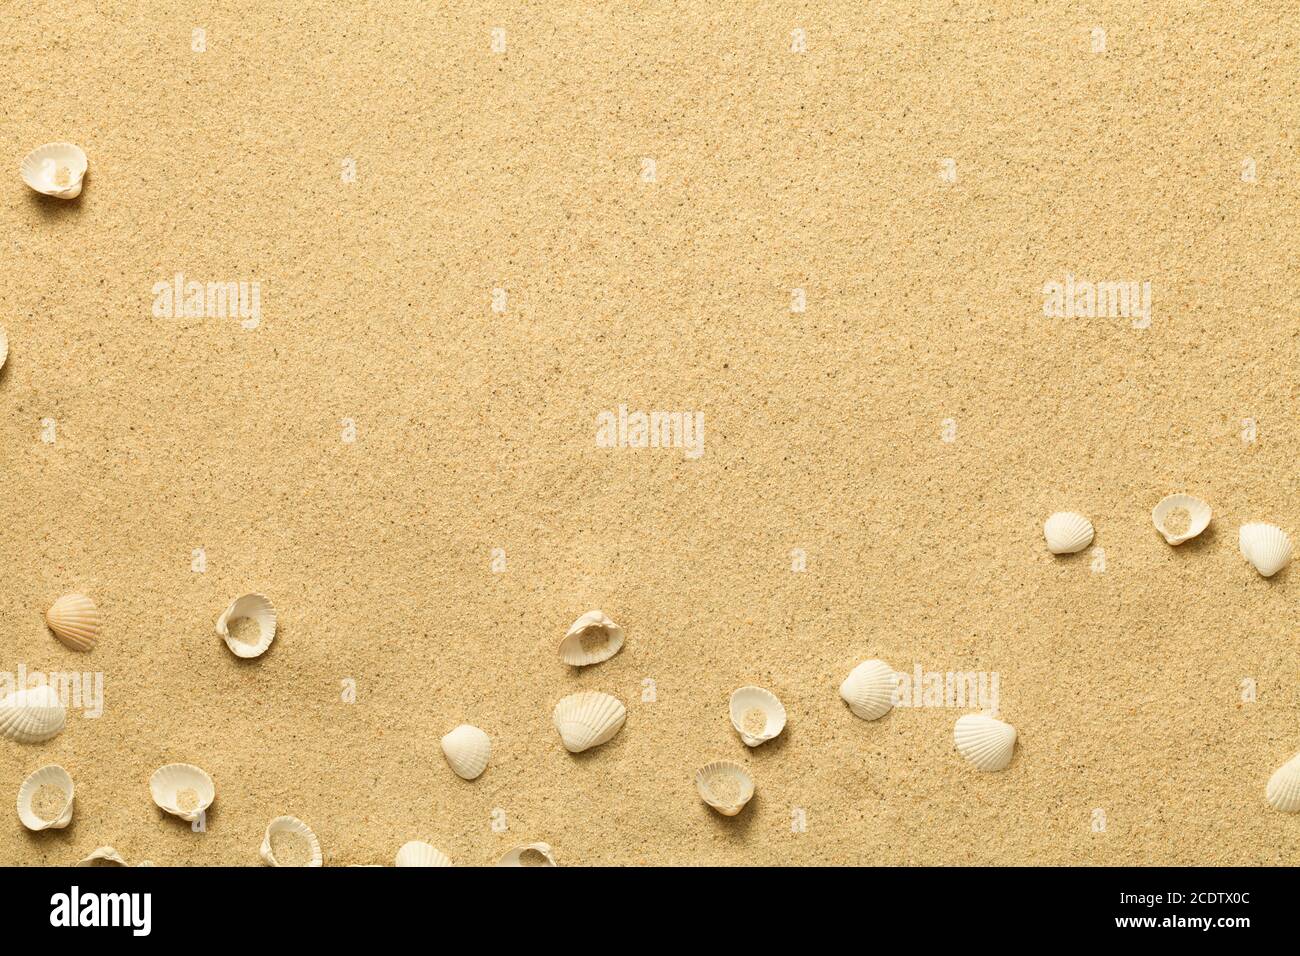 Été, fond de sable avec coquillages Banque D'Images